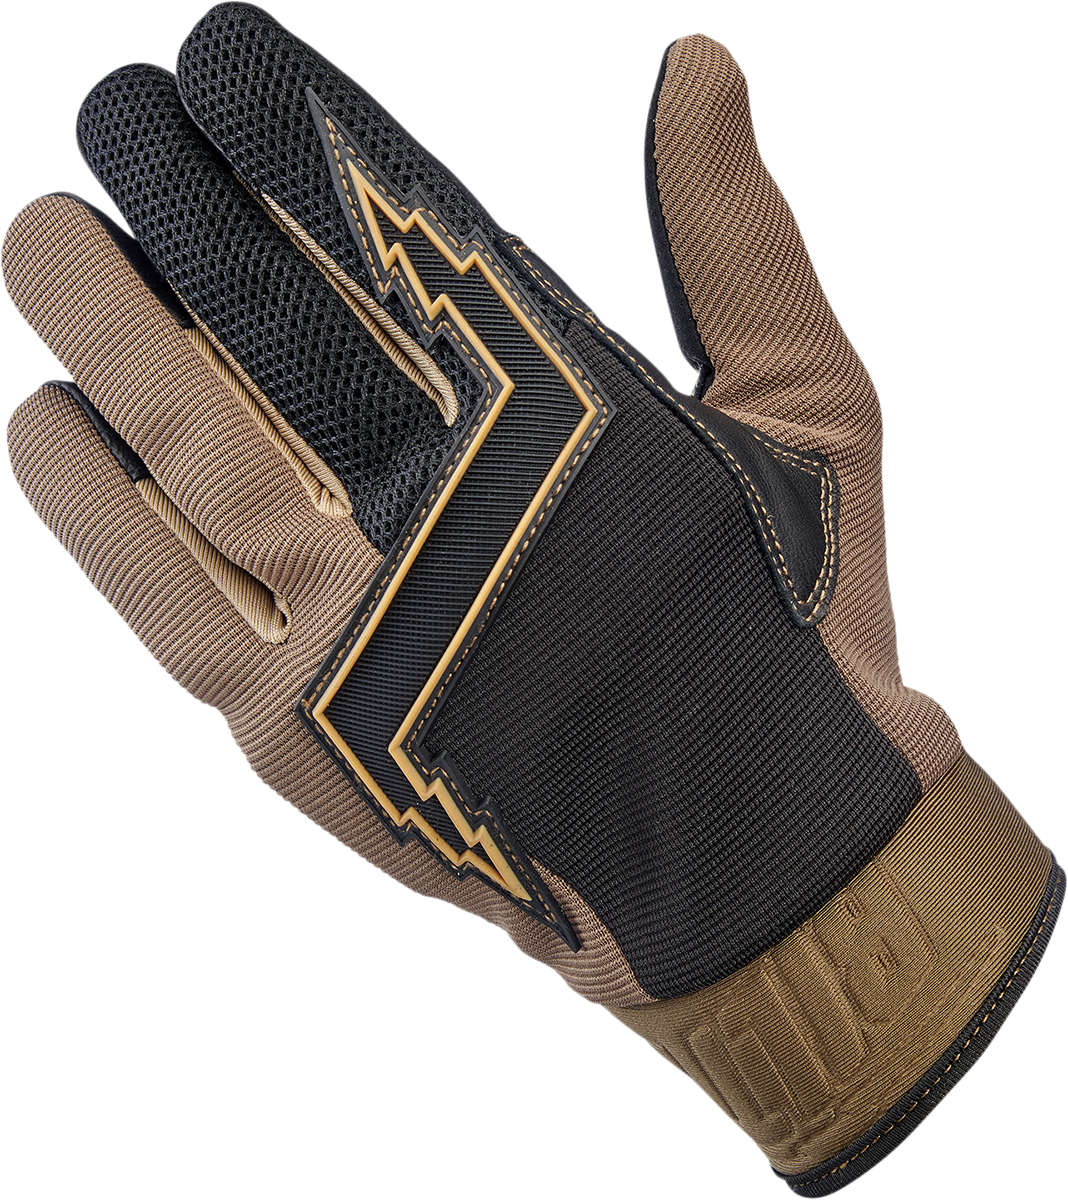 BILTWELL Baja Gloves - Chocolate - XL 1508-0201-305